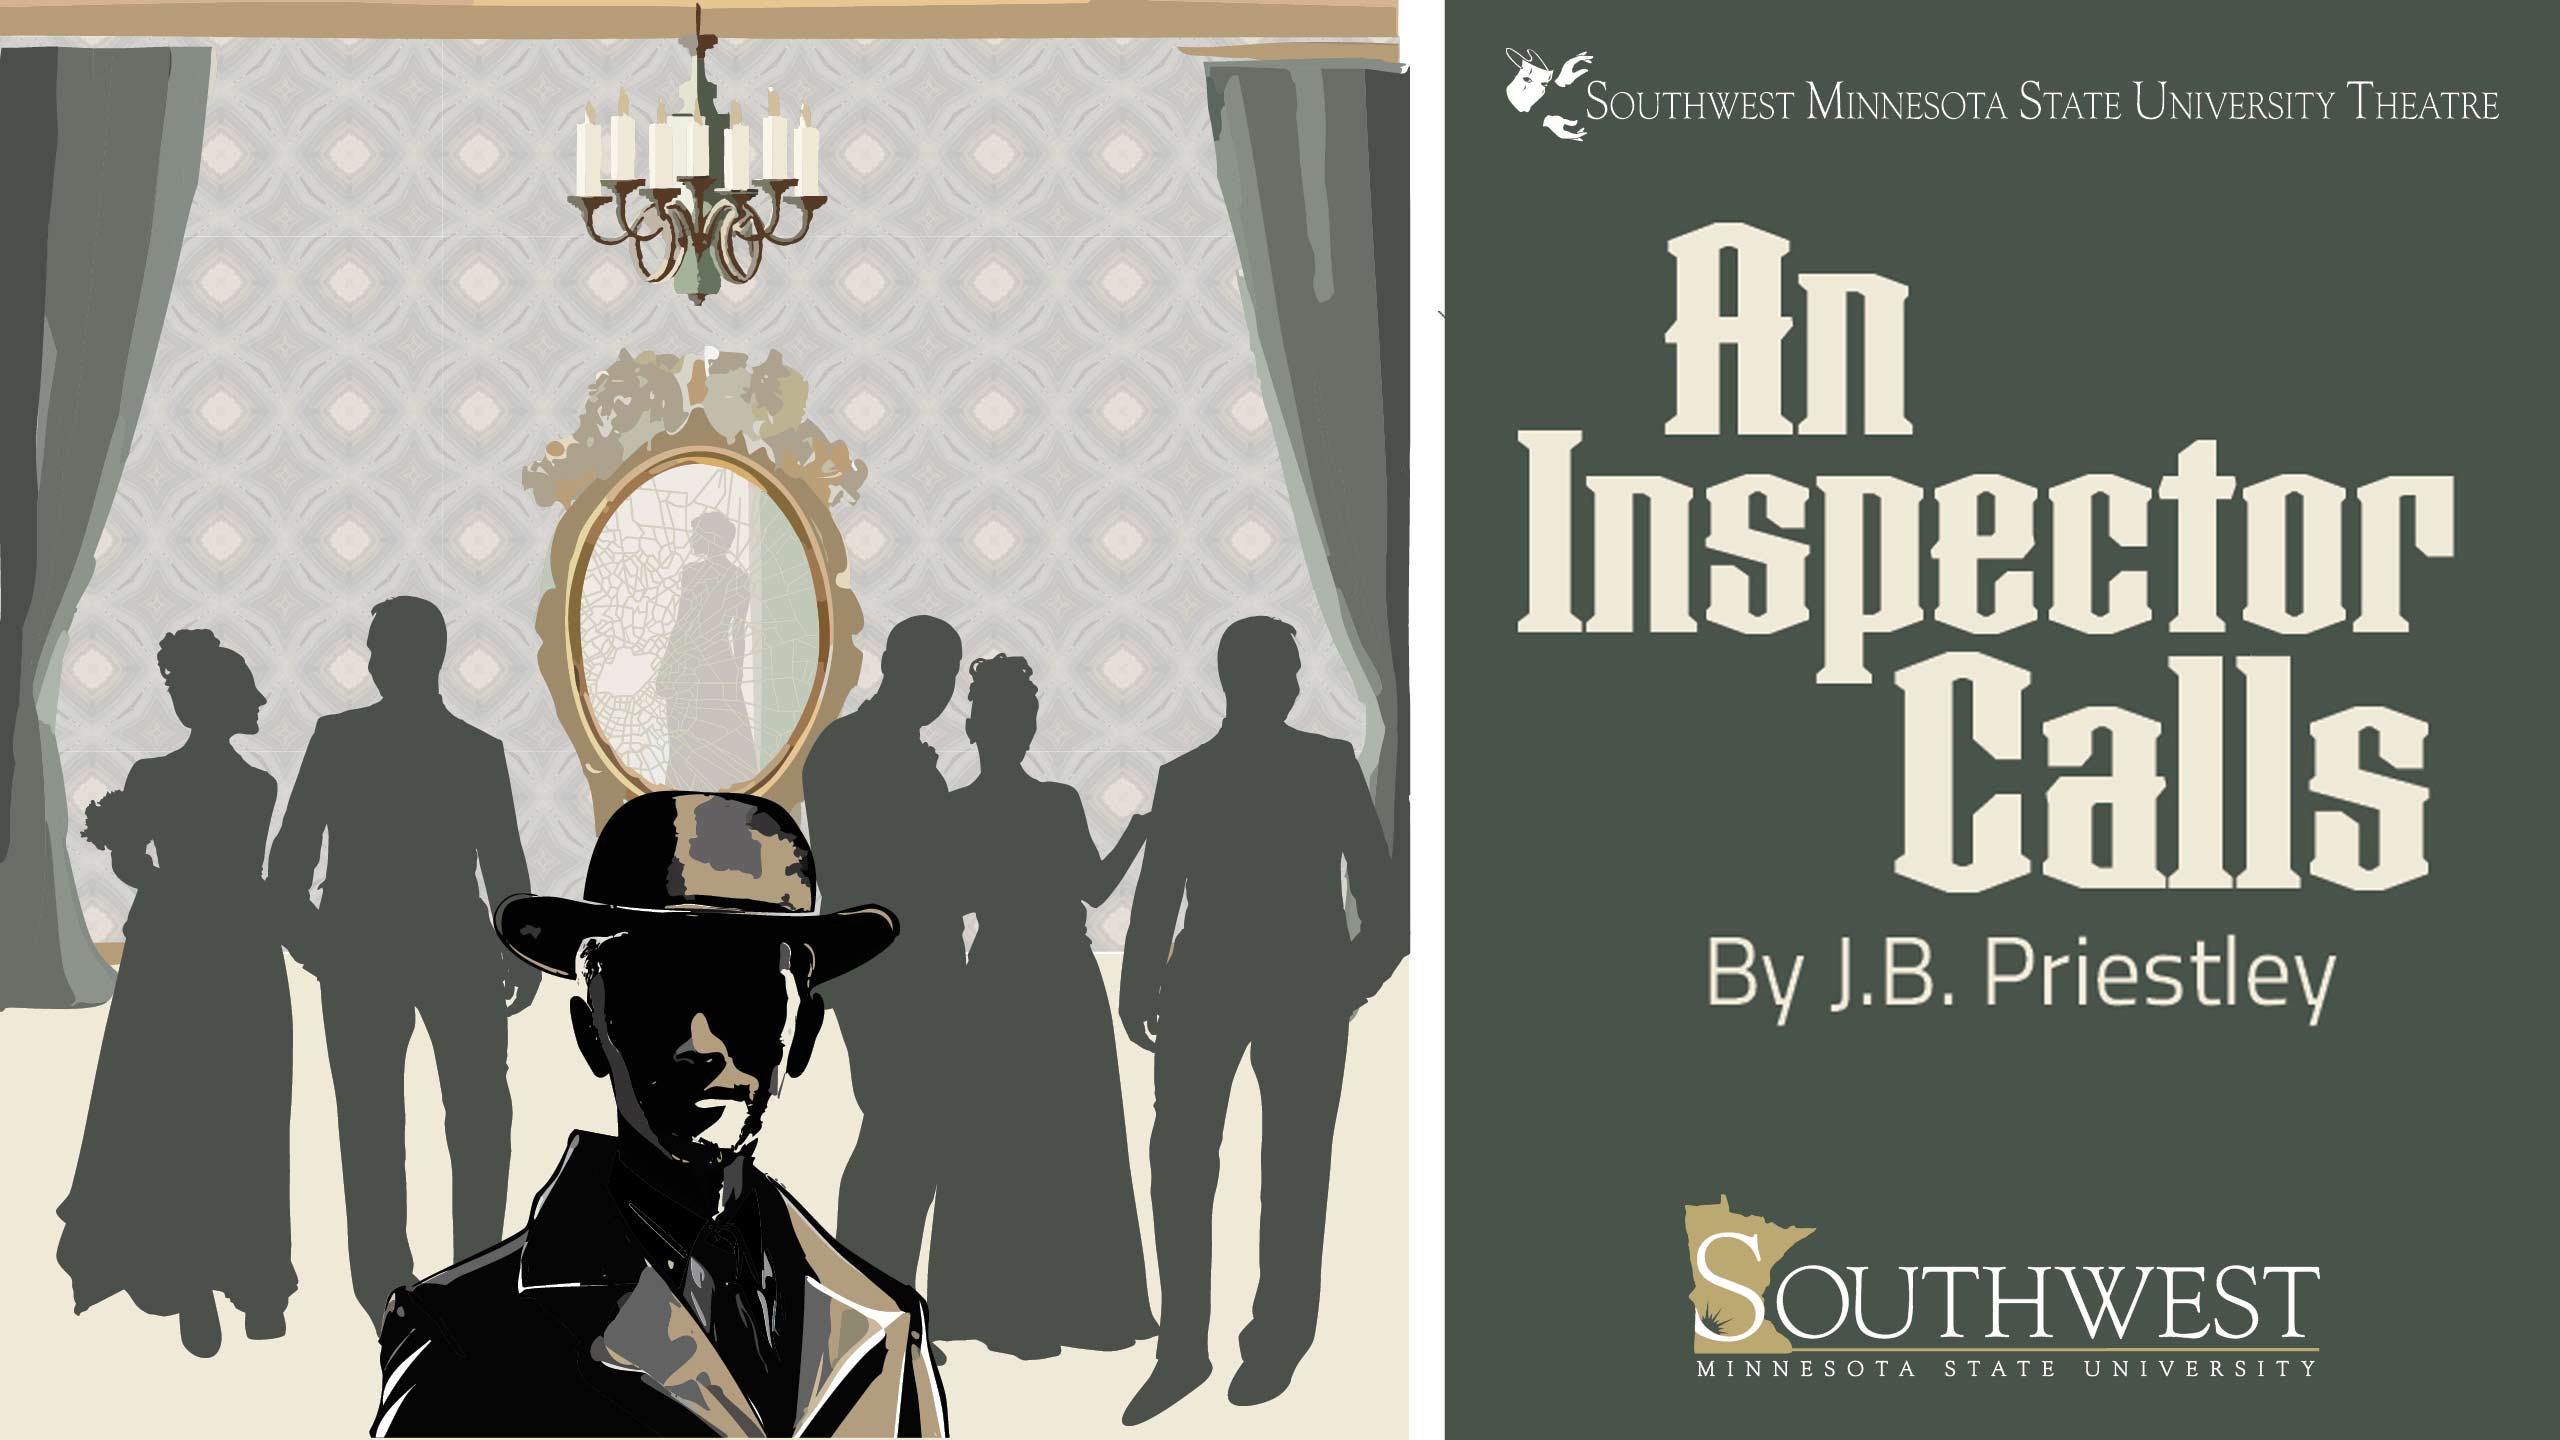 SMSU Theatre Presents "An Inspector Calls" April 10-14